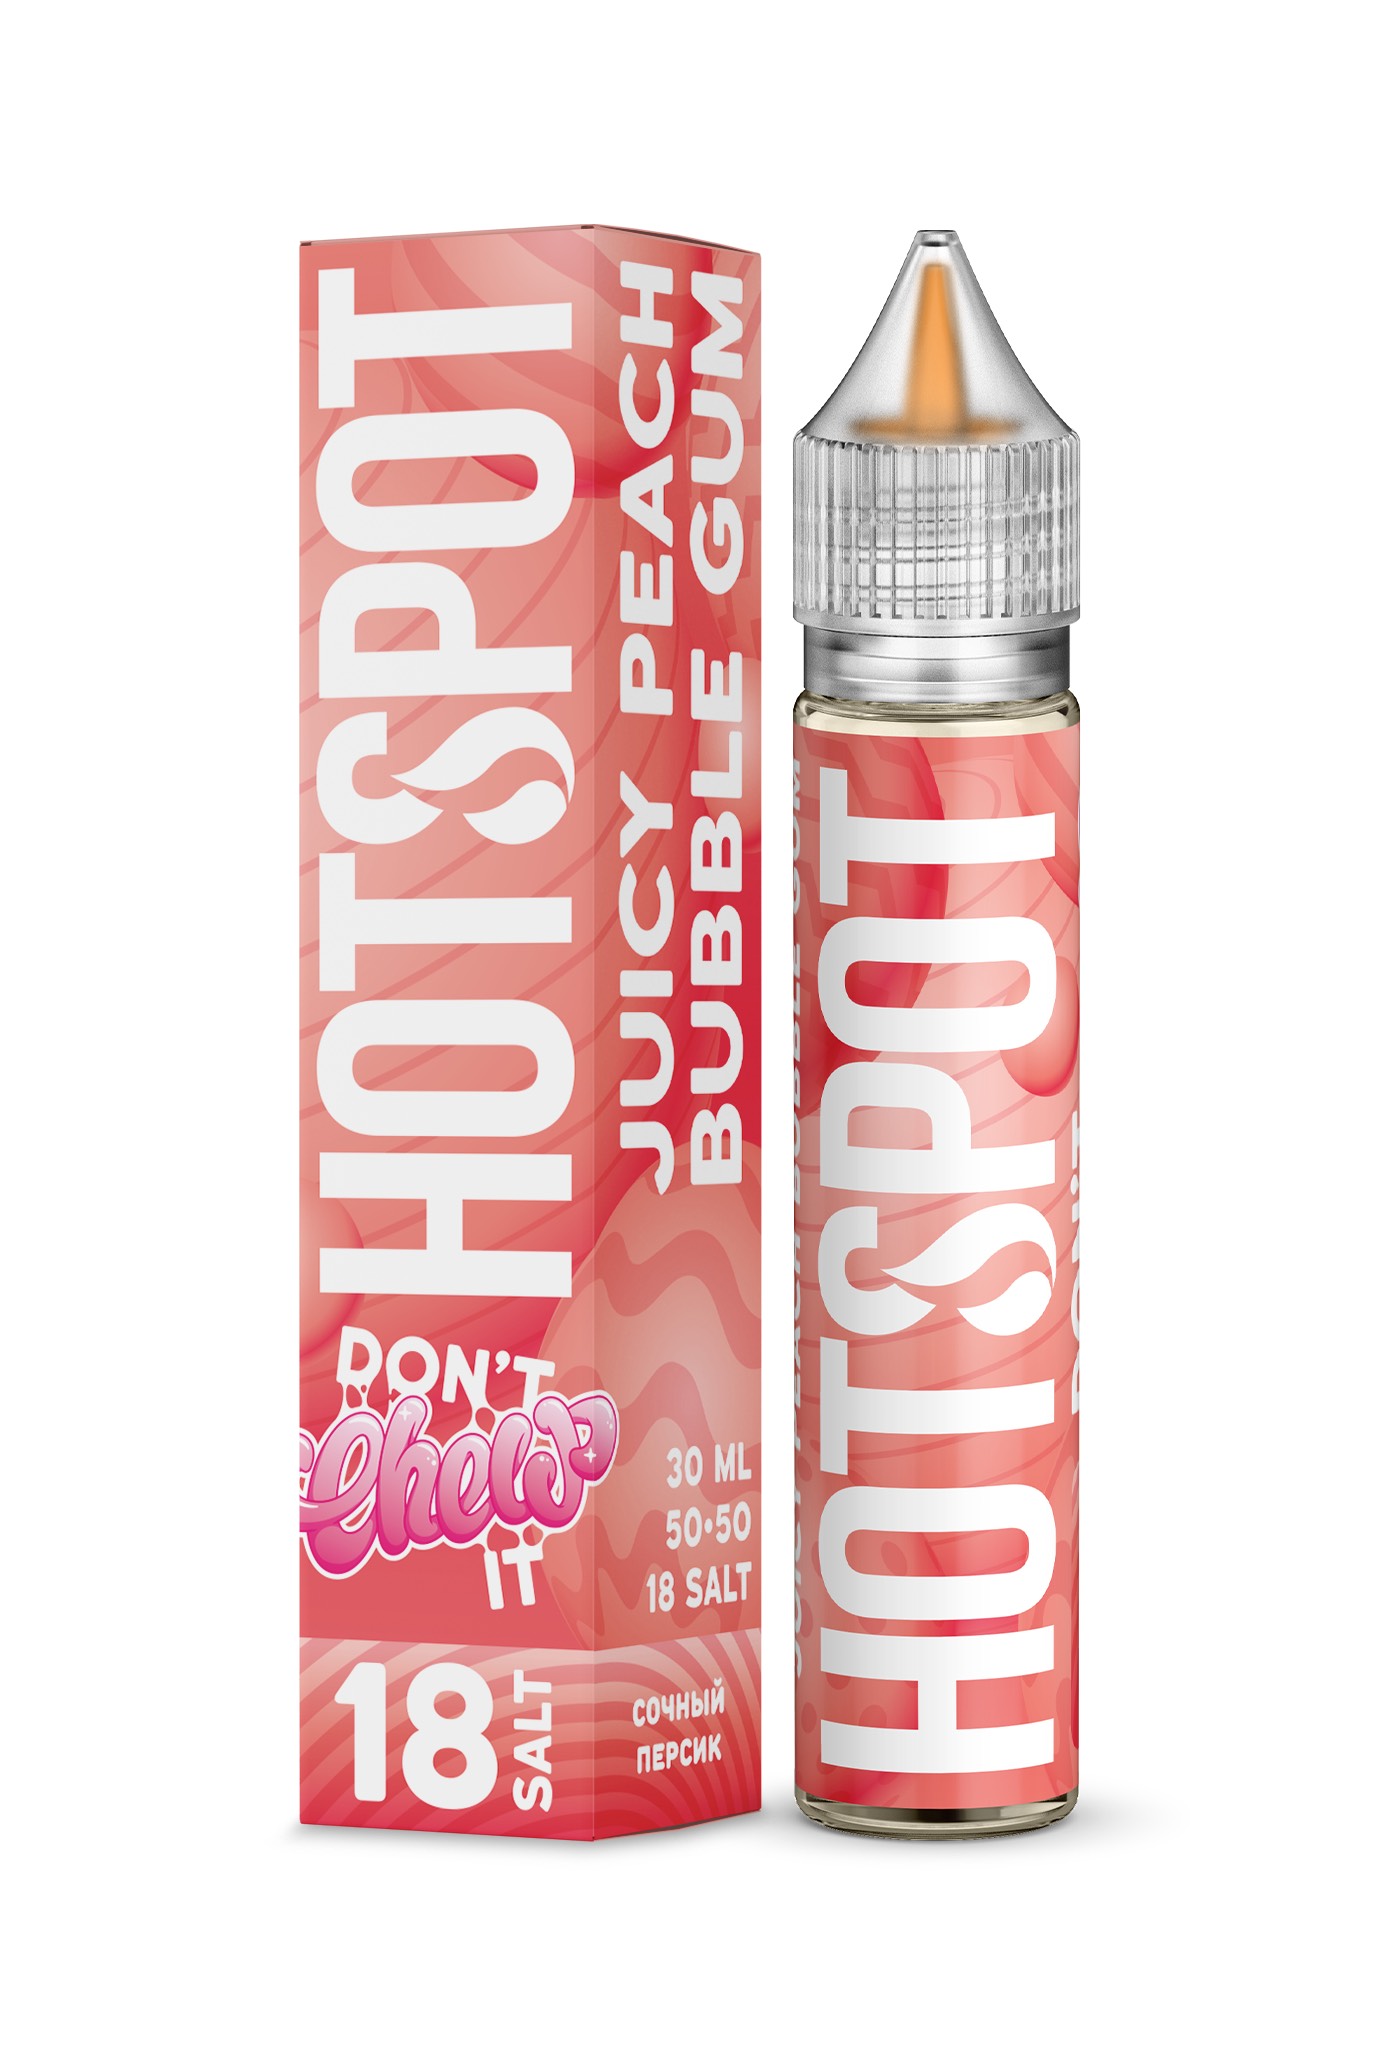 Жидкость - Hotspot Don't Chew It - Salt 18 - Персиковая Жвачка - 30 ml